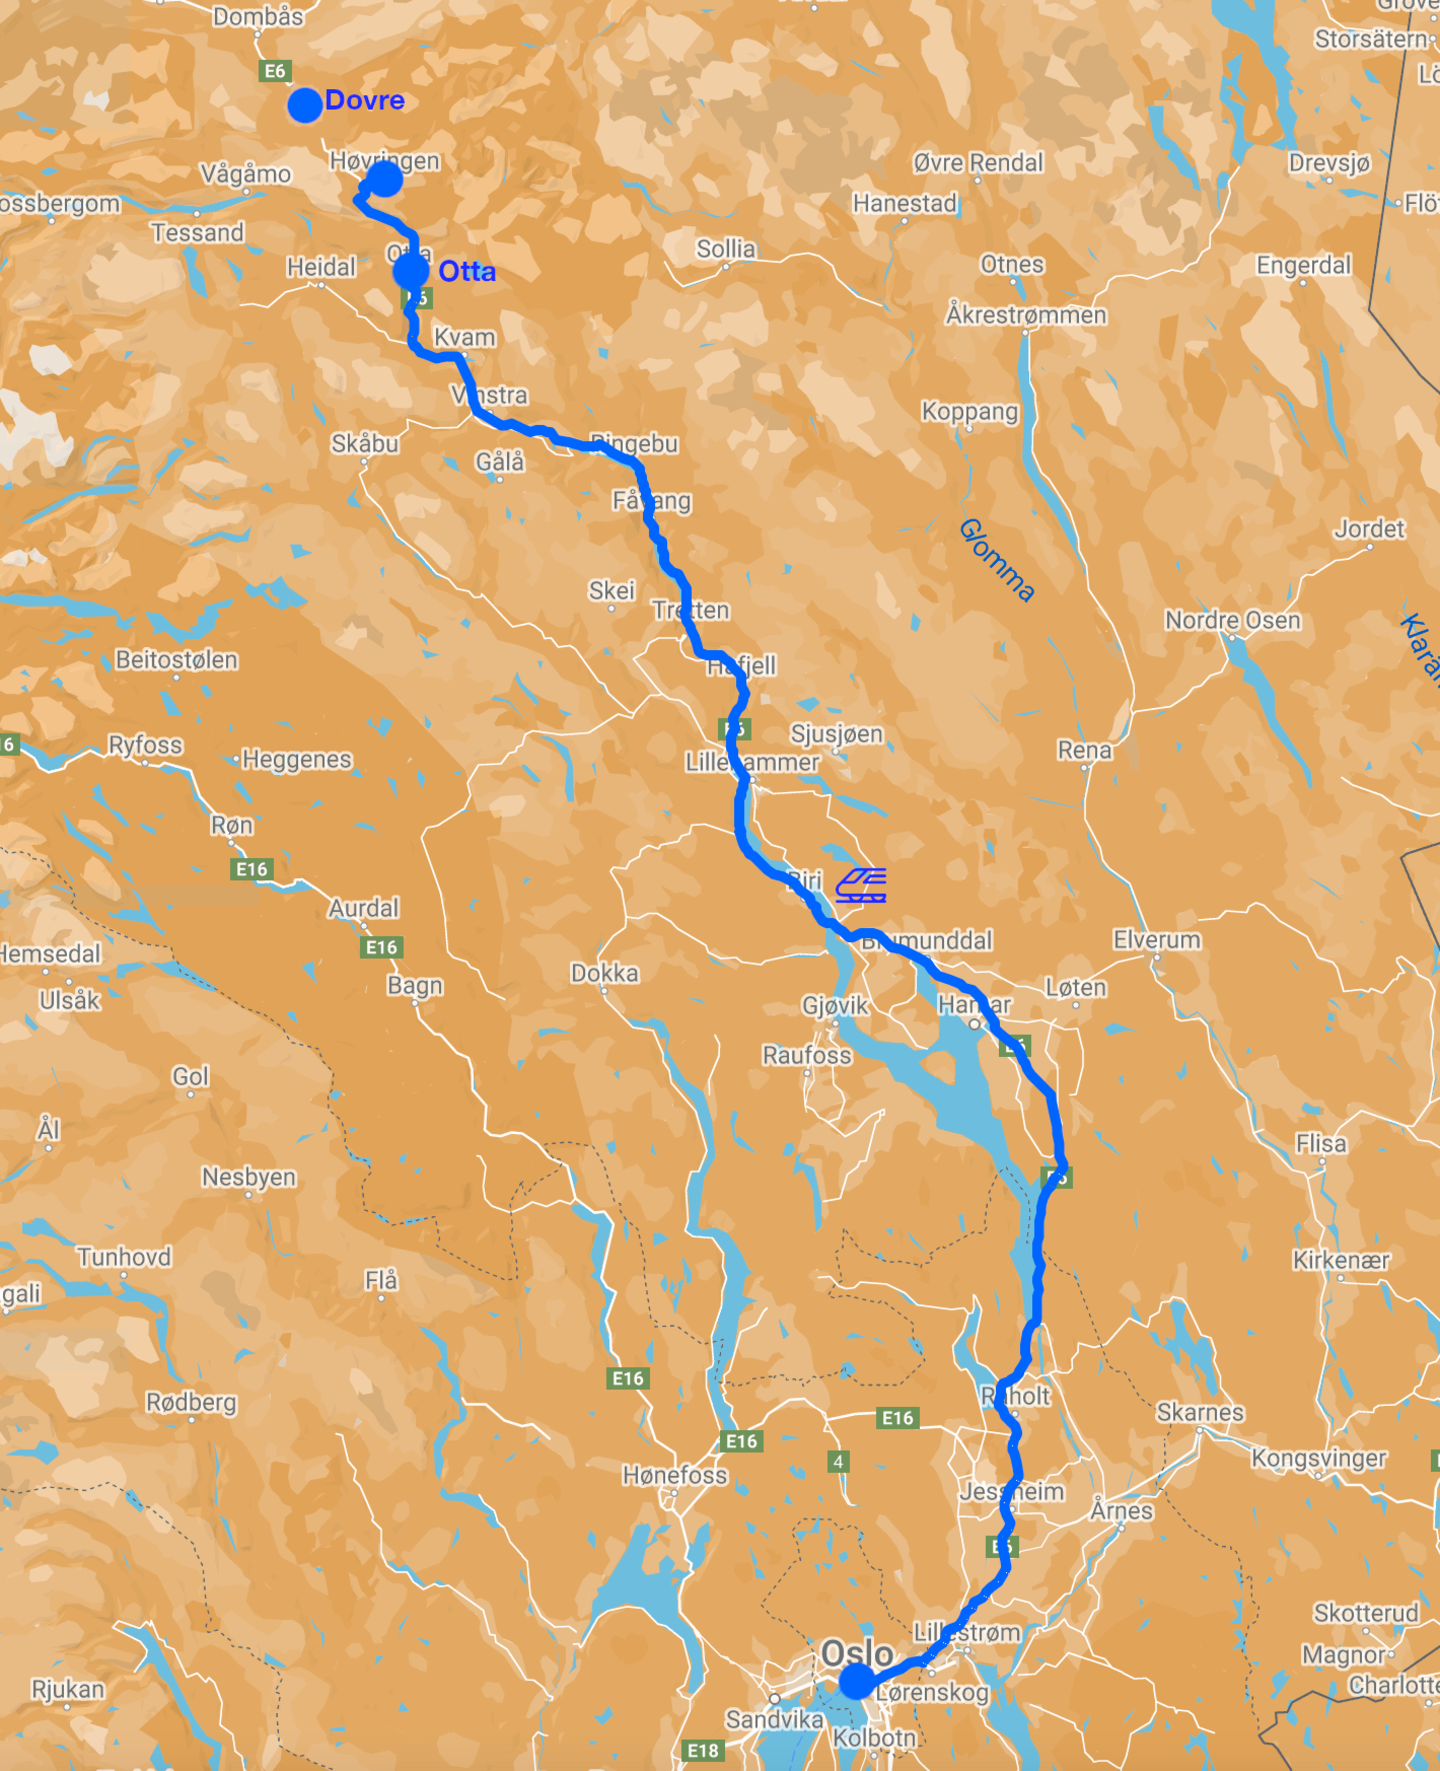 Mappa hiking lungo il sentiero dei vichinghi